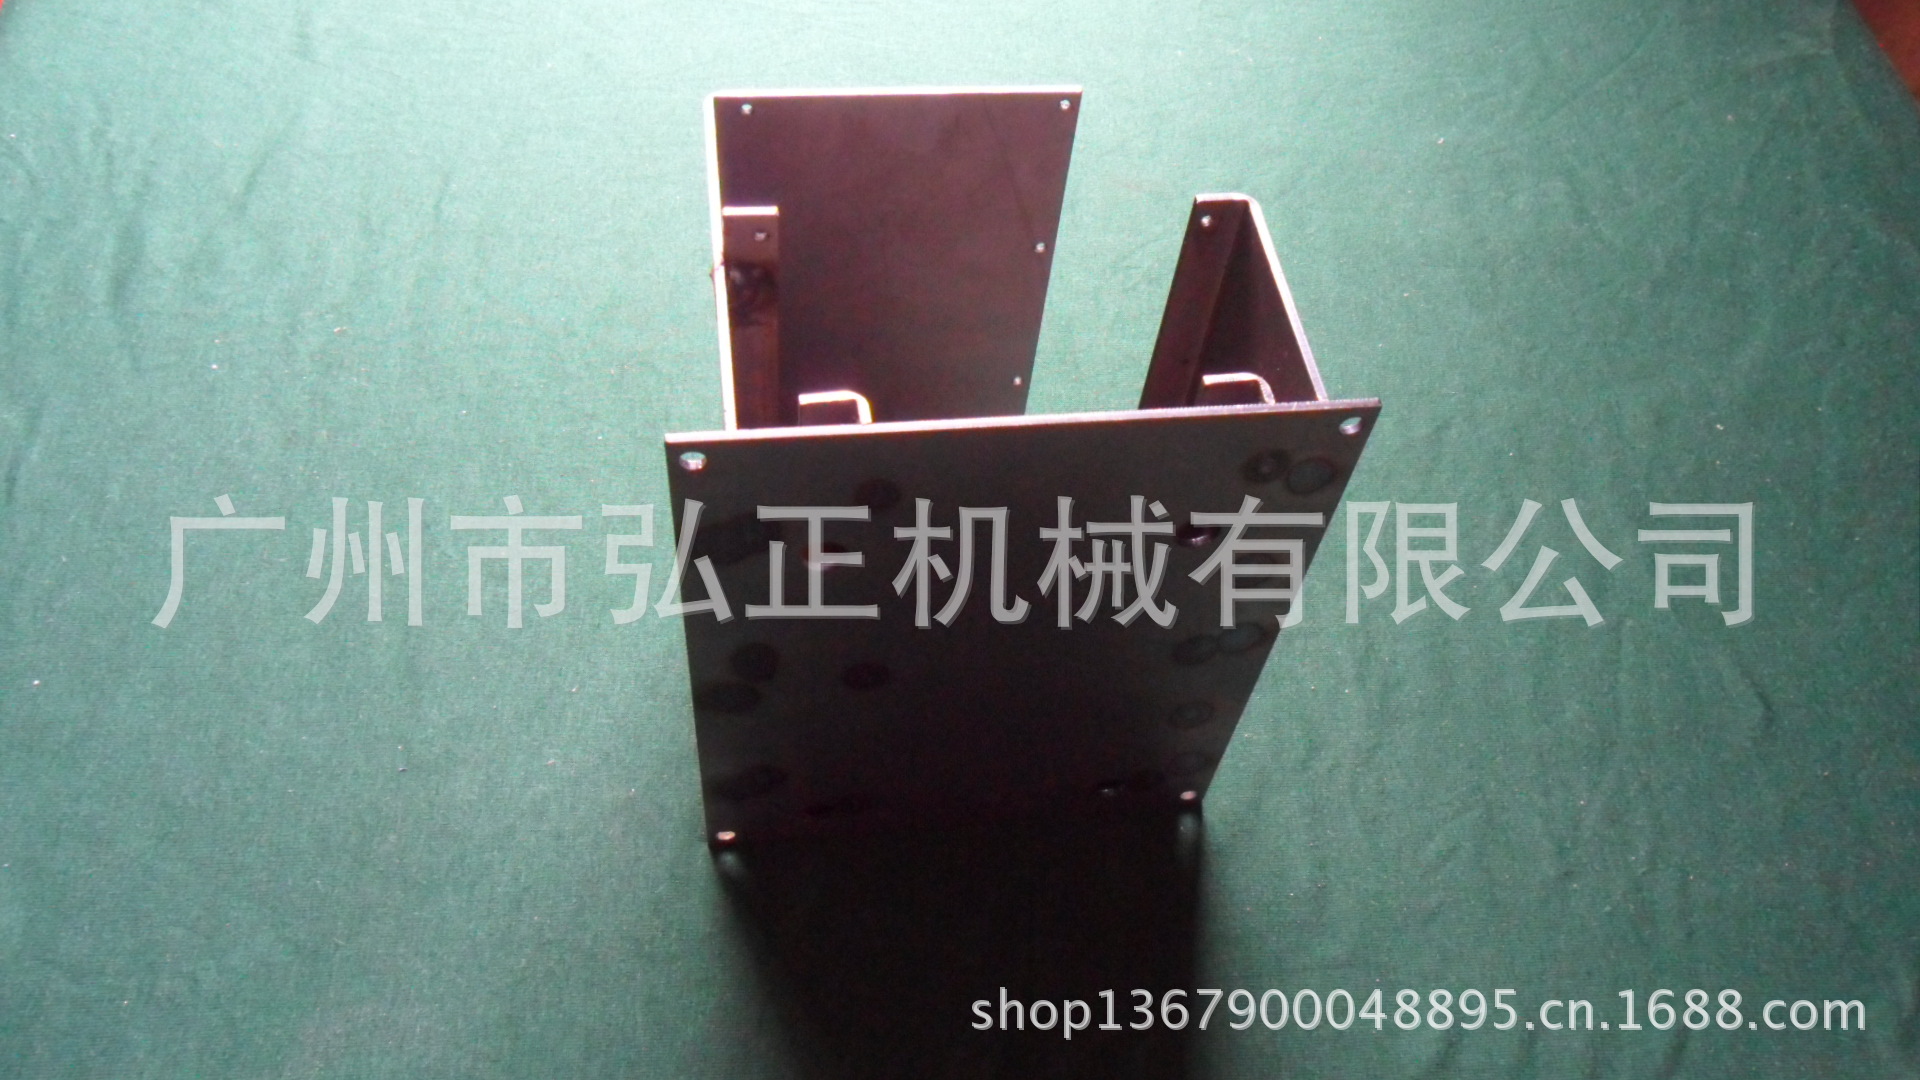 【精密机械加工 非标设备设计 专业焊接部件 金